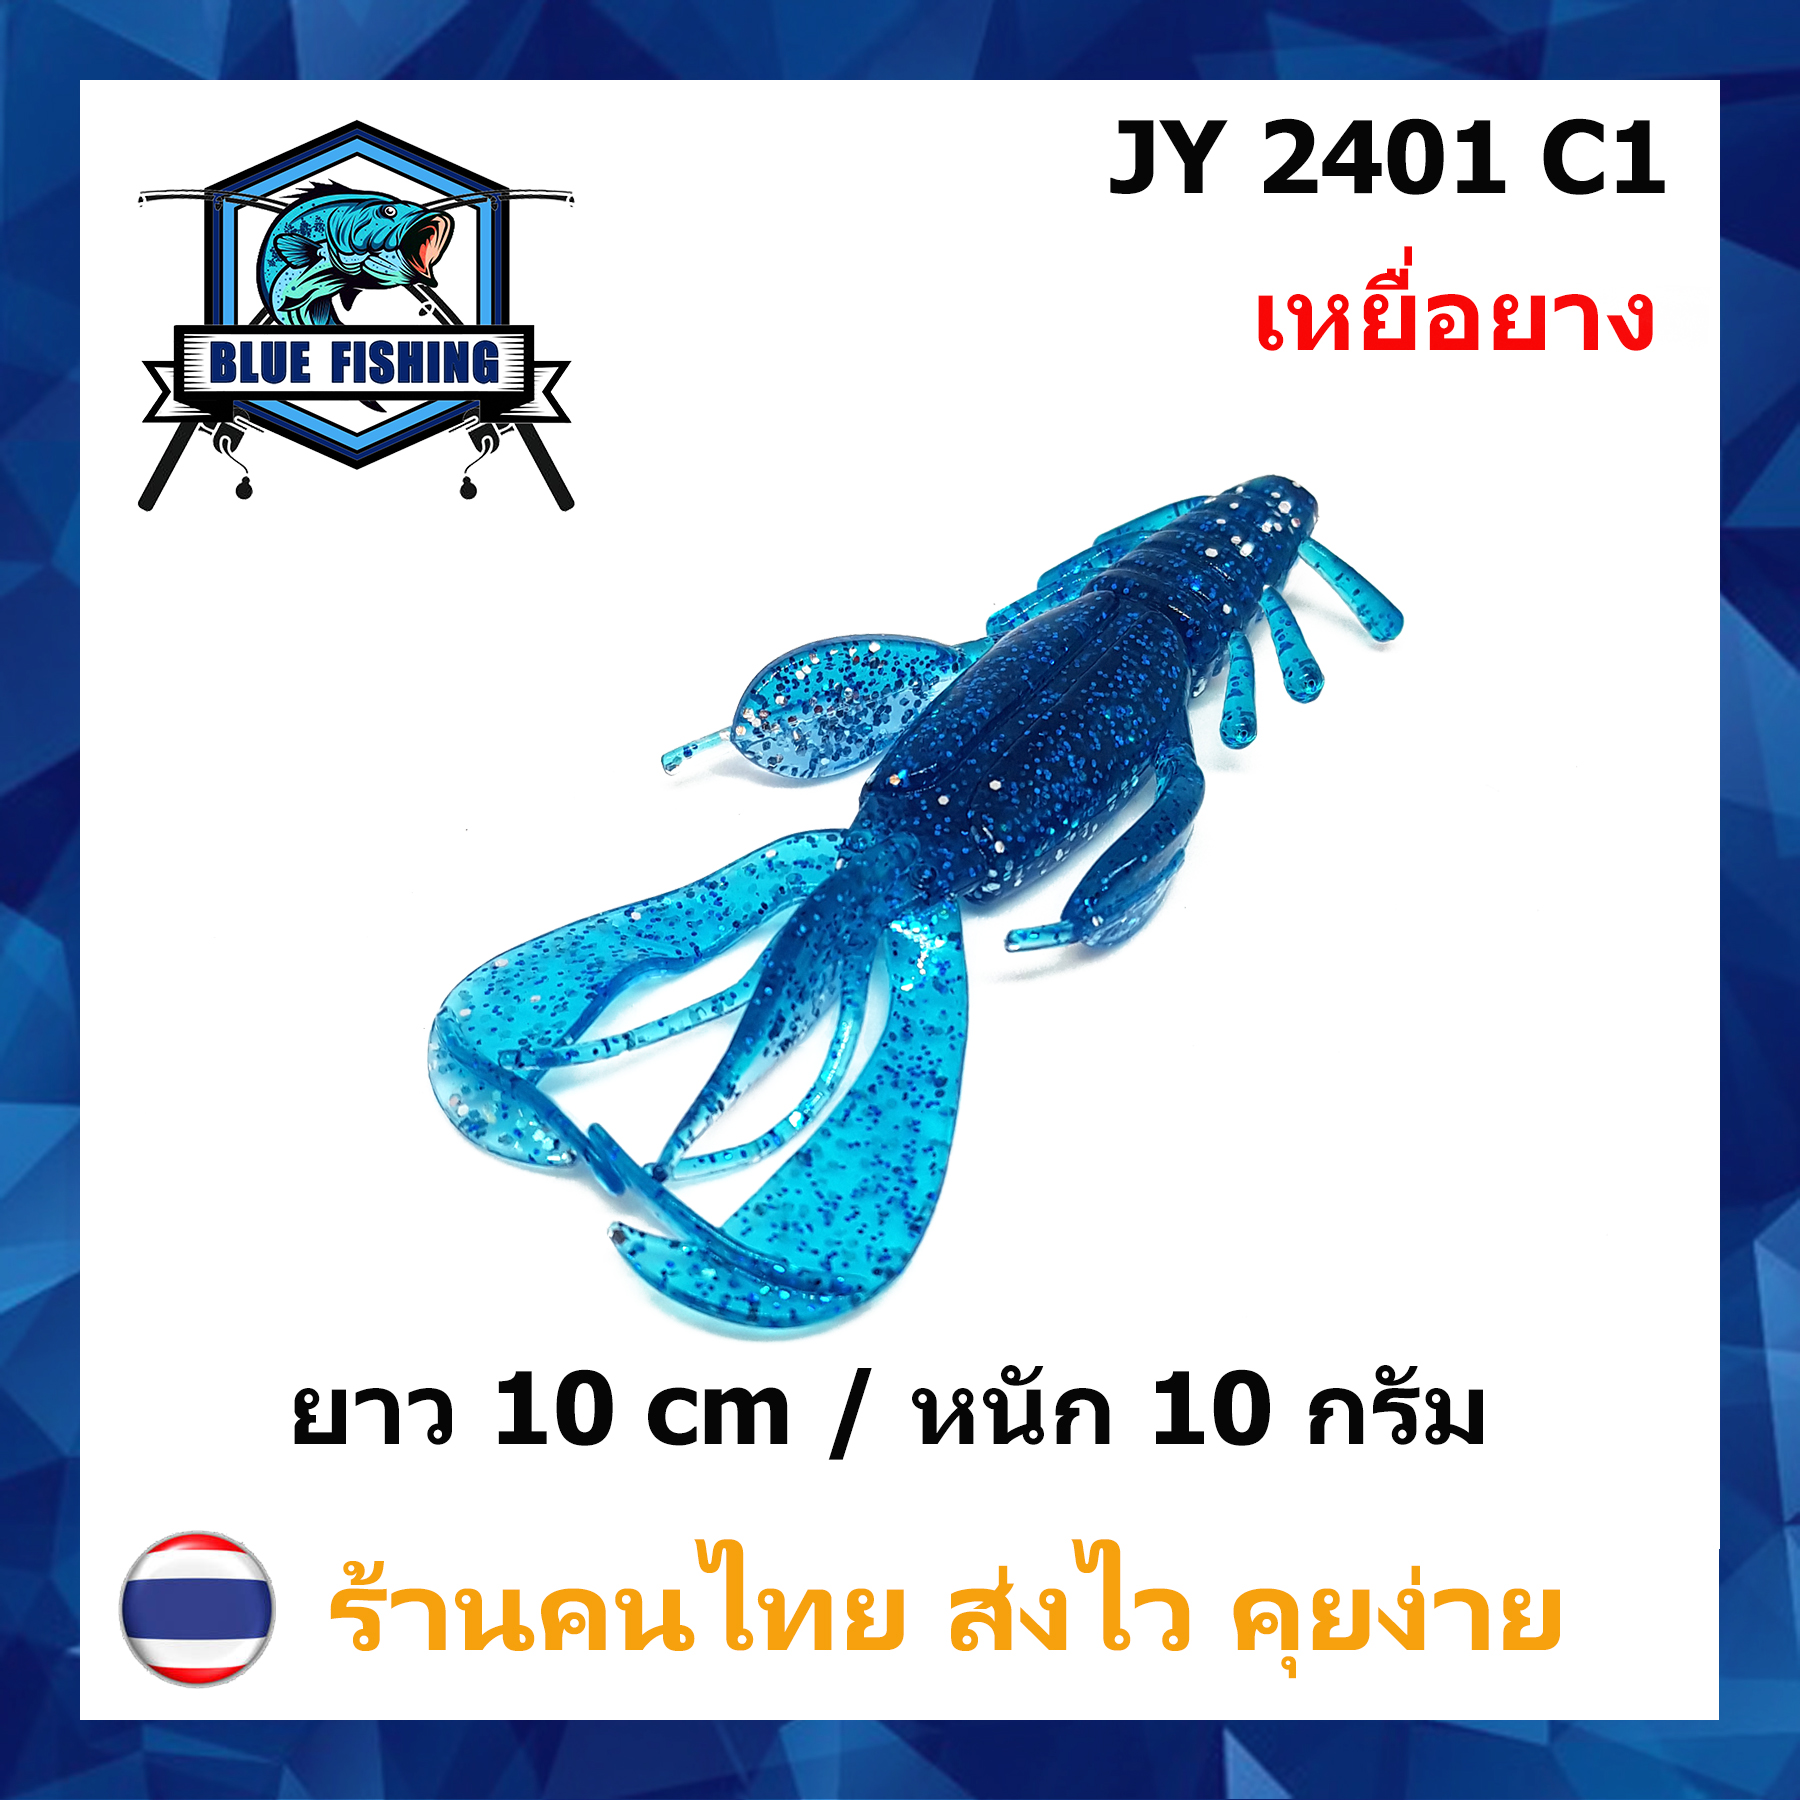 [ Blue Fishing ] (ส่งไว!! มีสินค้าพร้อมส่ง) แมลงยาง หางเพลิง เหยื่อตกปลา เหยื่อปลอม เหยื่อยาง คุณภาพดี ยาว 10 CM หนัก 10 กรัม JY 2401